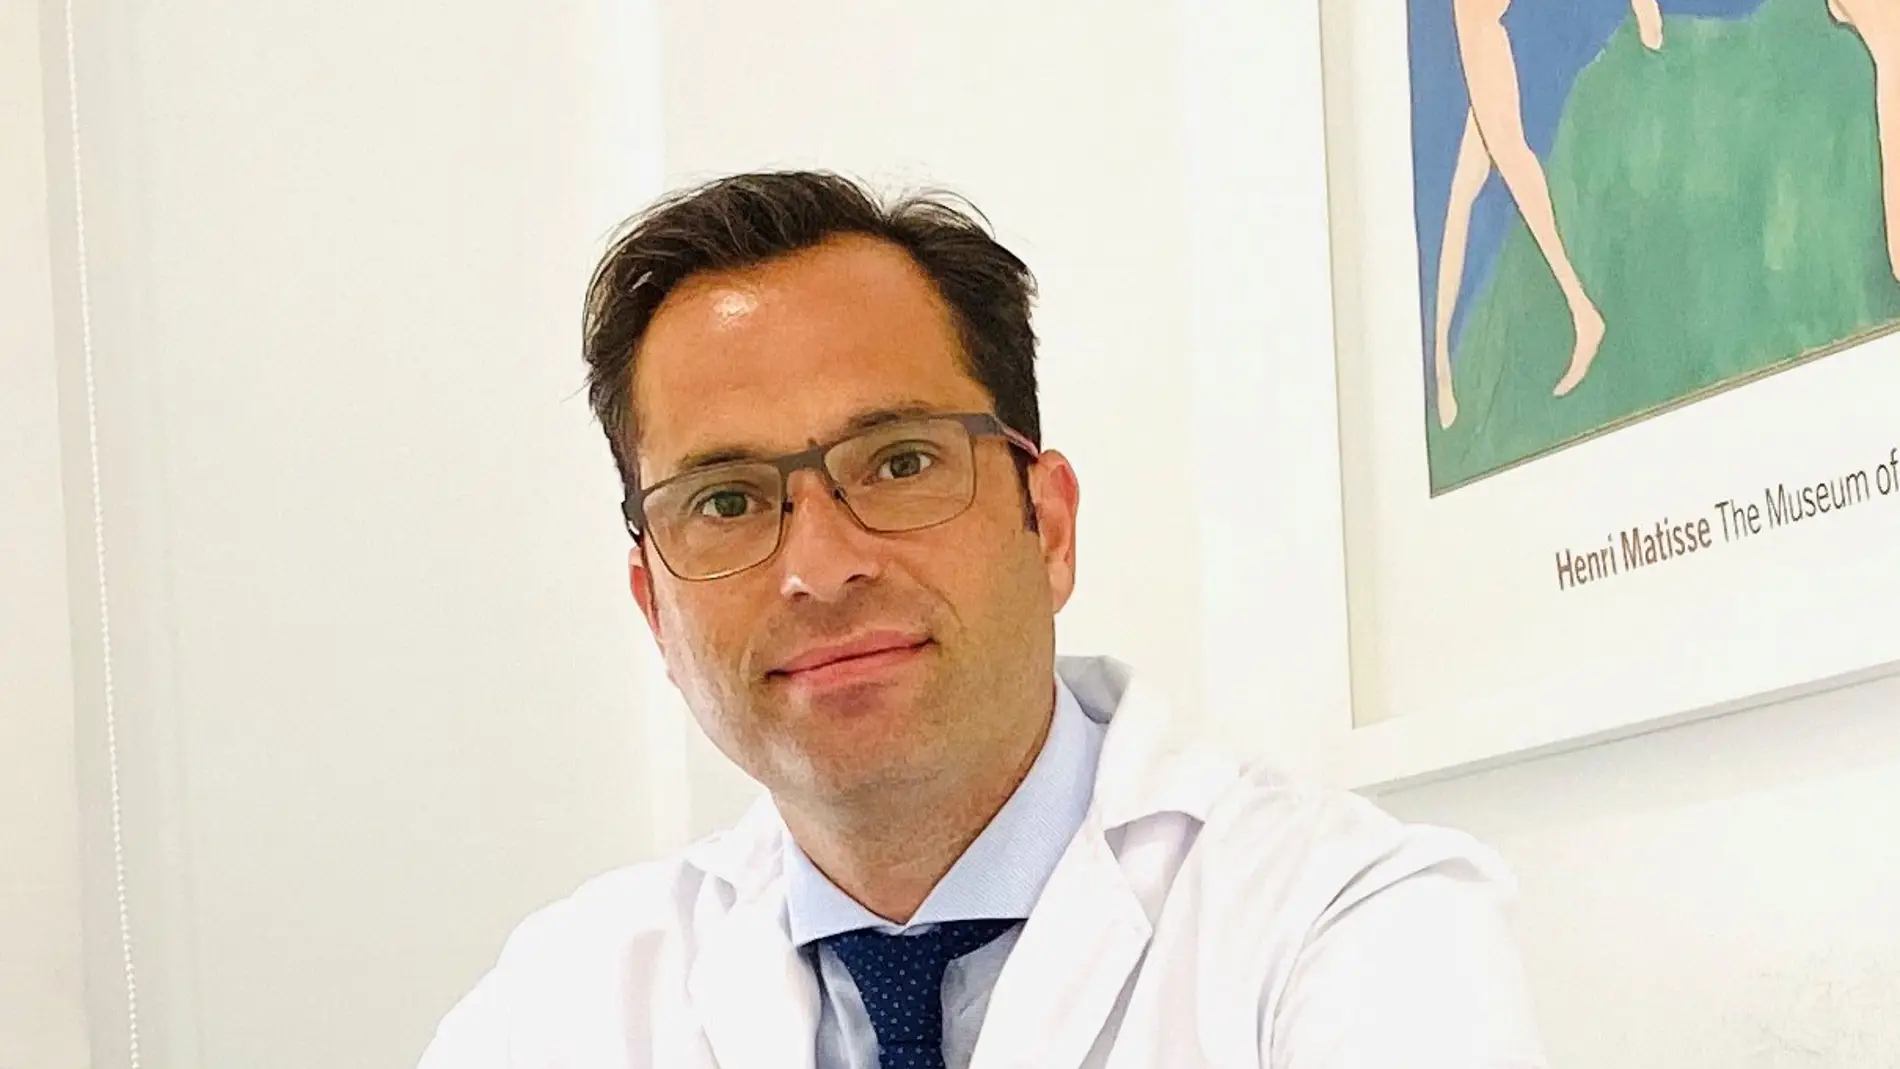 El doctor Jesús Romero Imbroda, nuevo presidente de la Sociedad Andaluza de Neurología